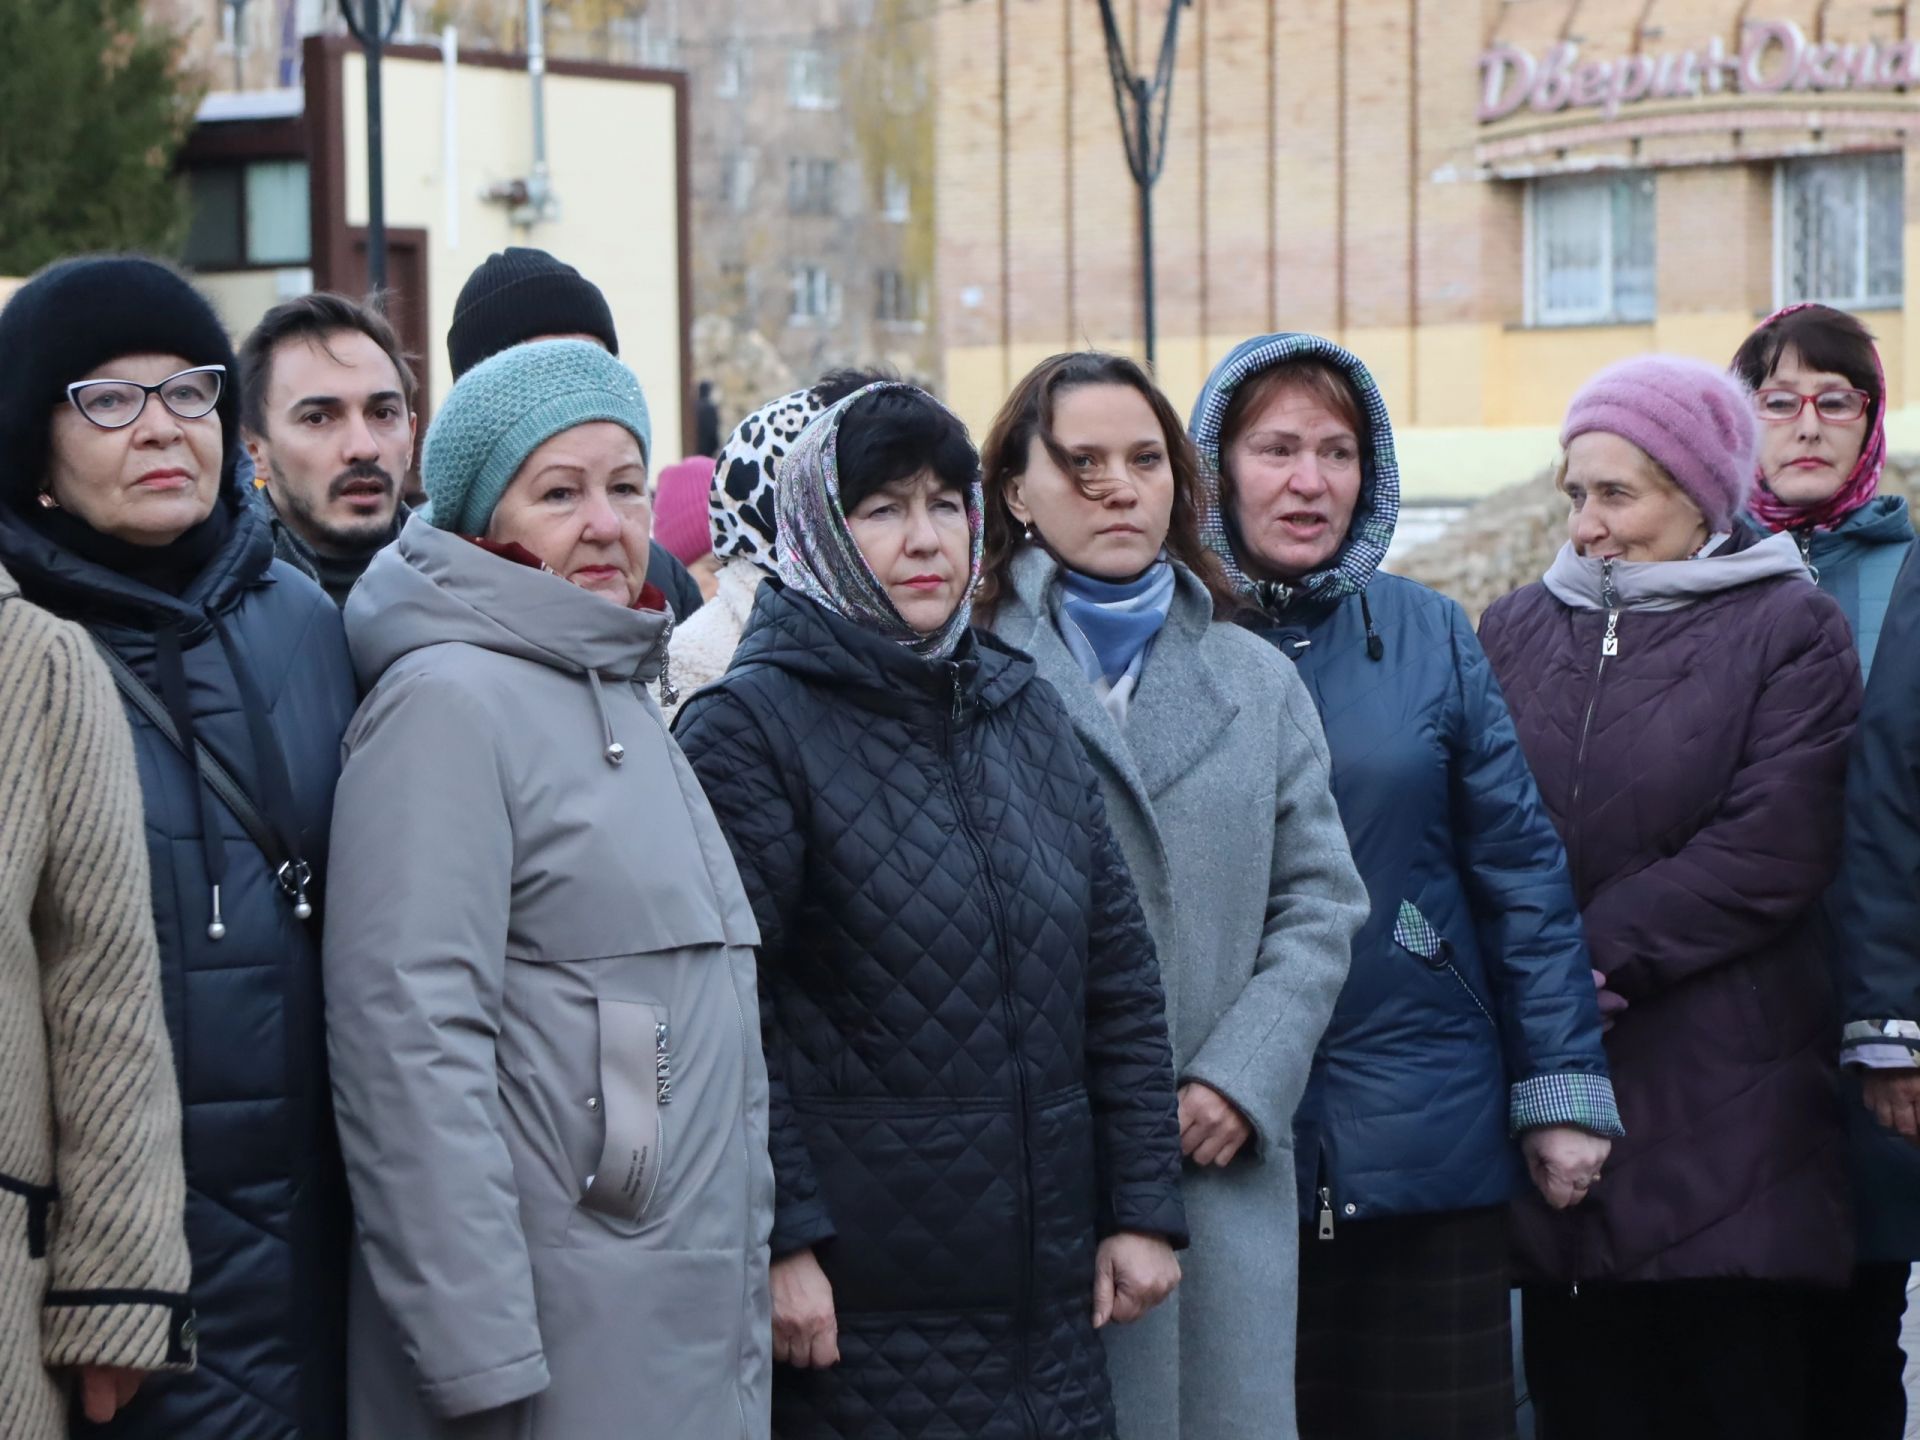 Более пяти тонн гуманитарной помощи отправил Менделеевск для жителей Лисичанска